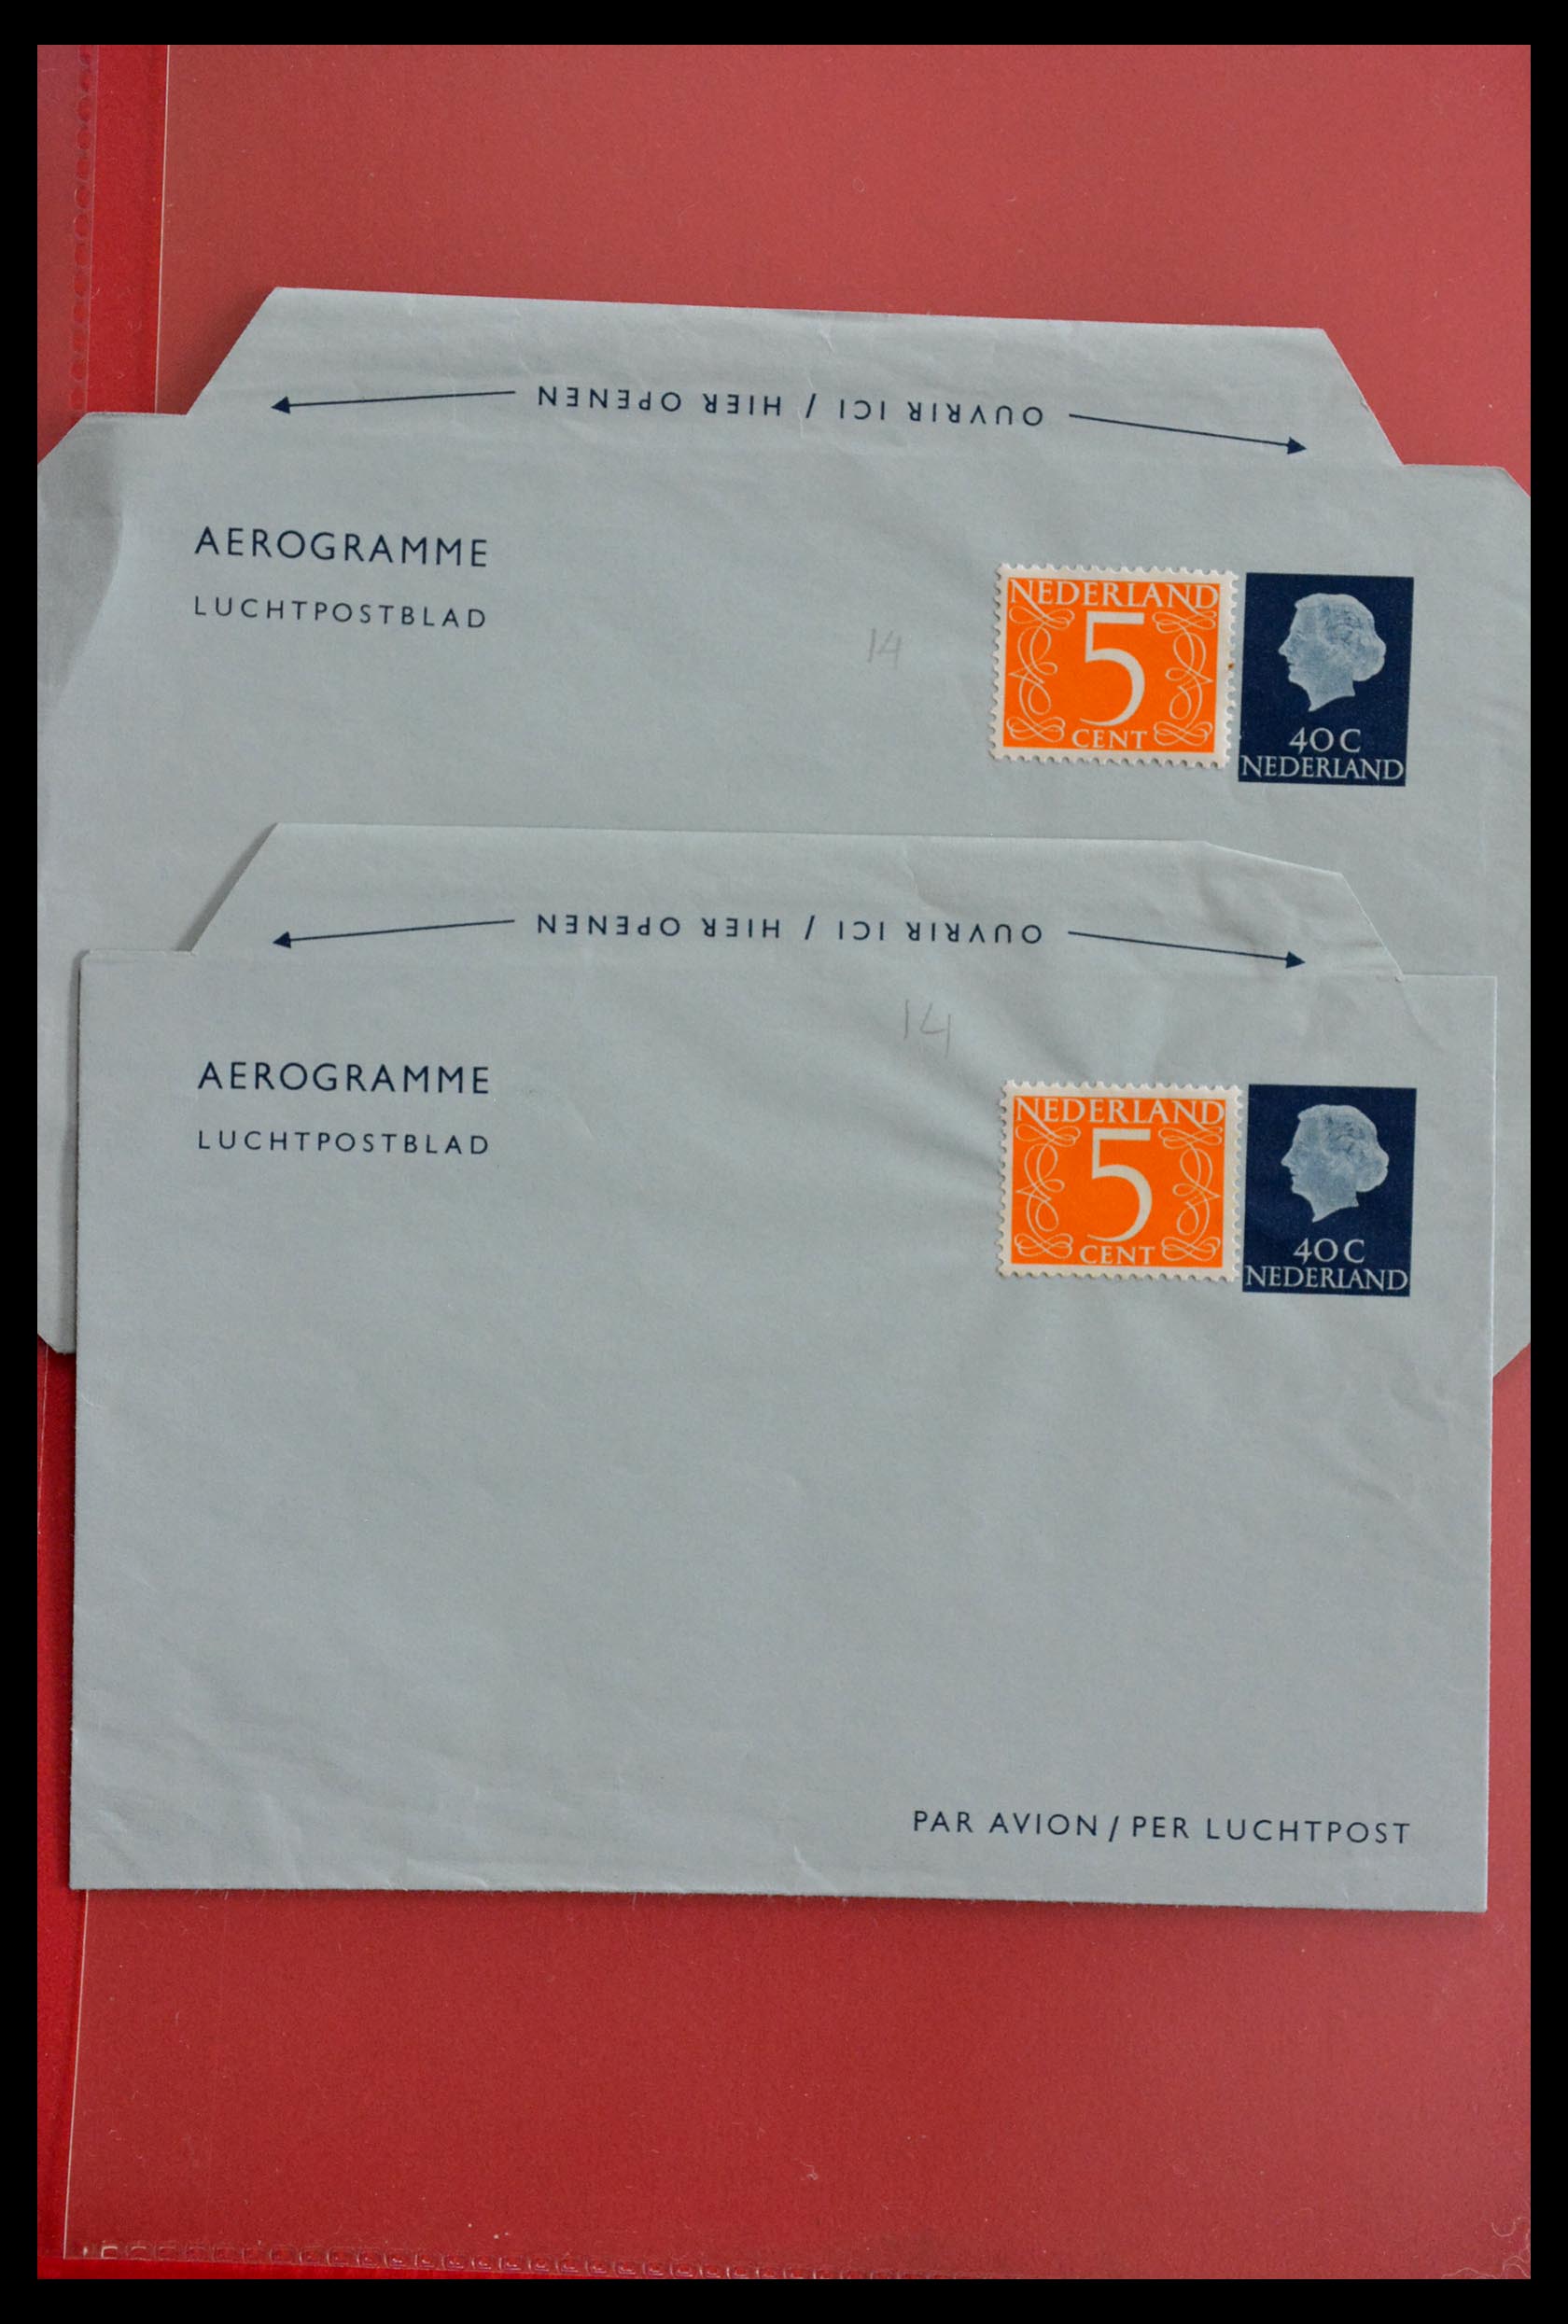 28895 018 - 28895 Netherlands postal stationeries.